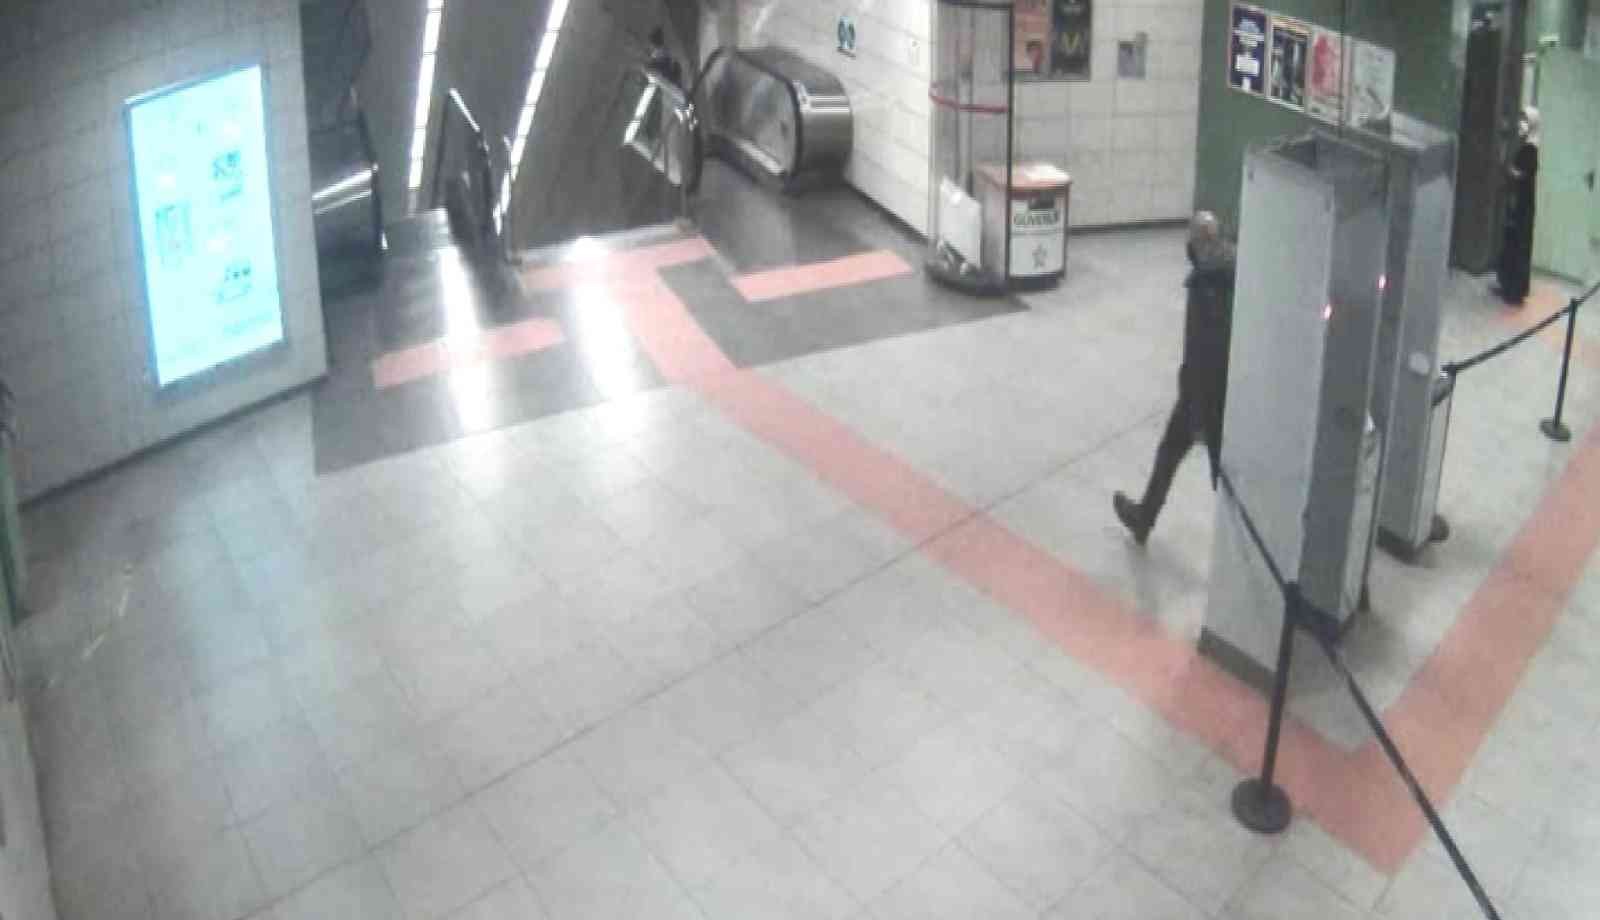 Metrodaki bıçaklı saldırıya ilişkin yeni görüntüler ortaya çıktı #istanbul